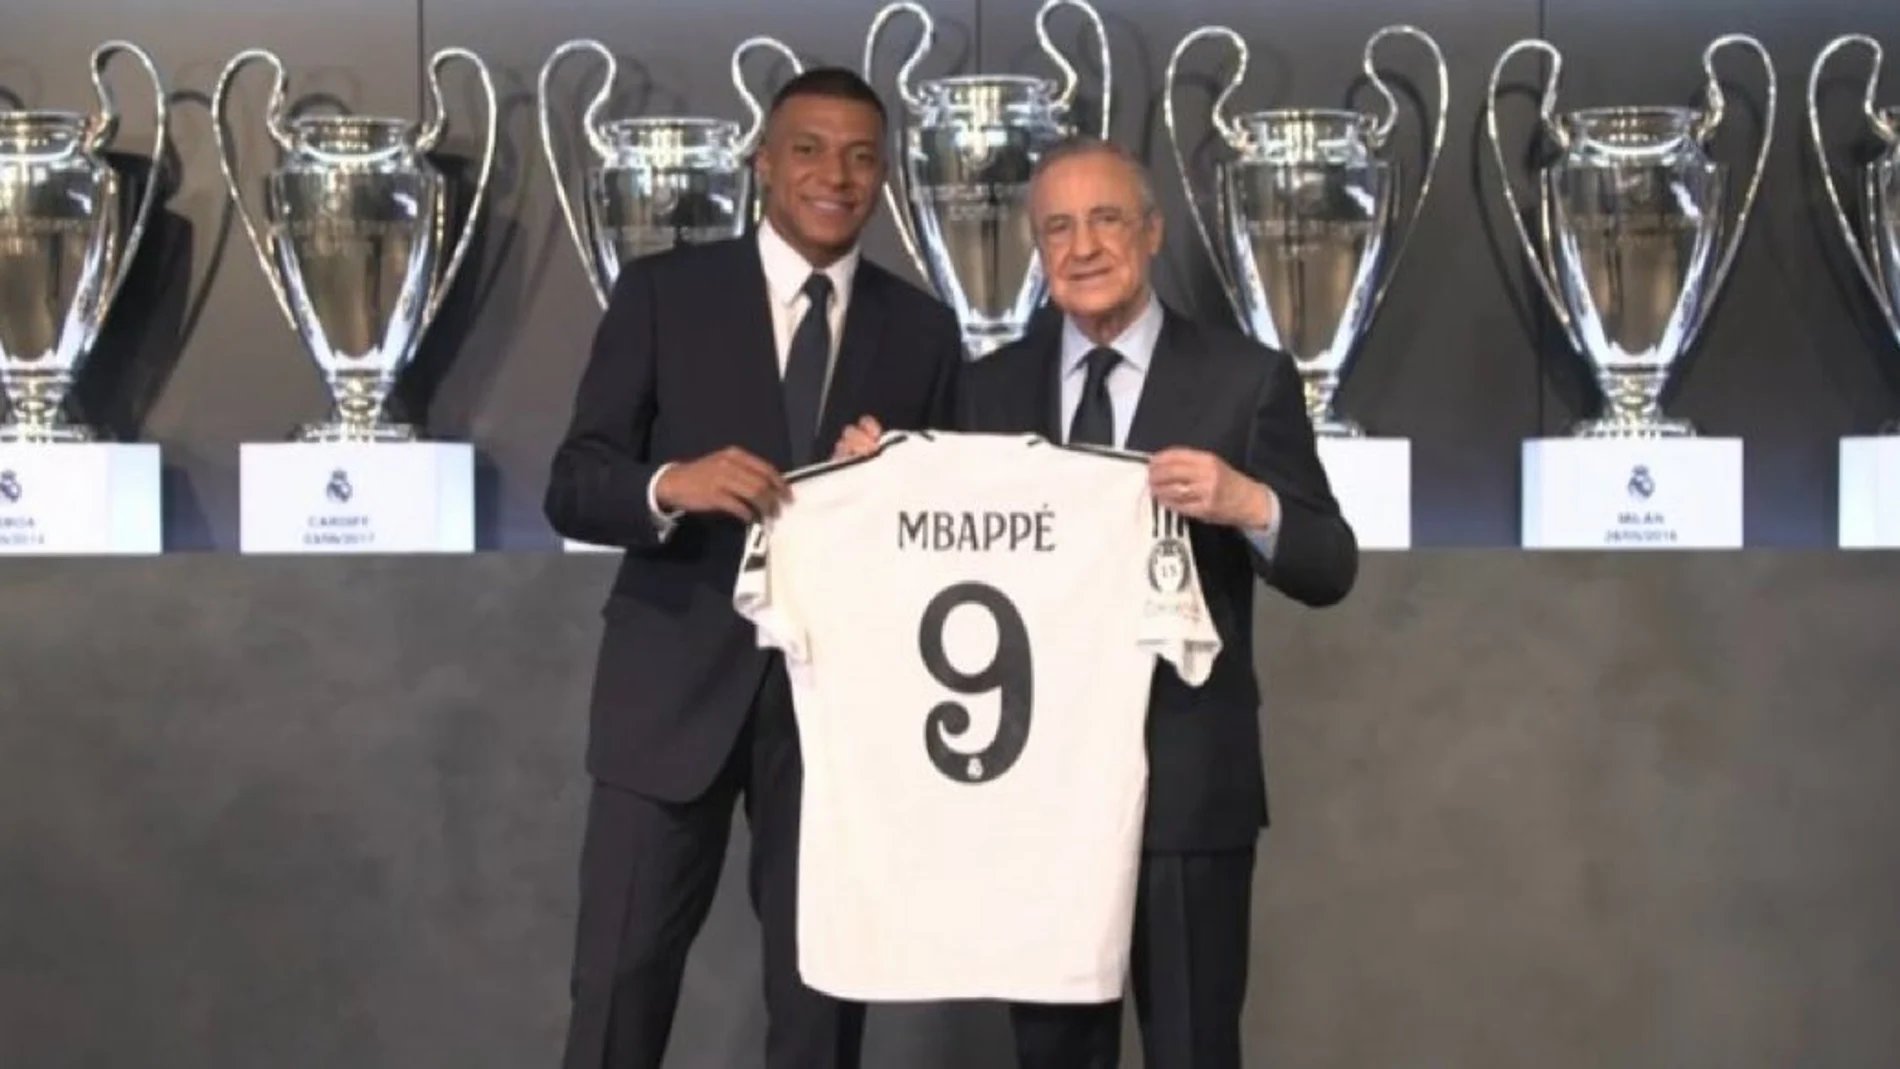 Mbappé posa junto con la camiseta del Real Madrid y Florentino